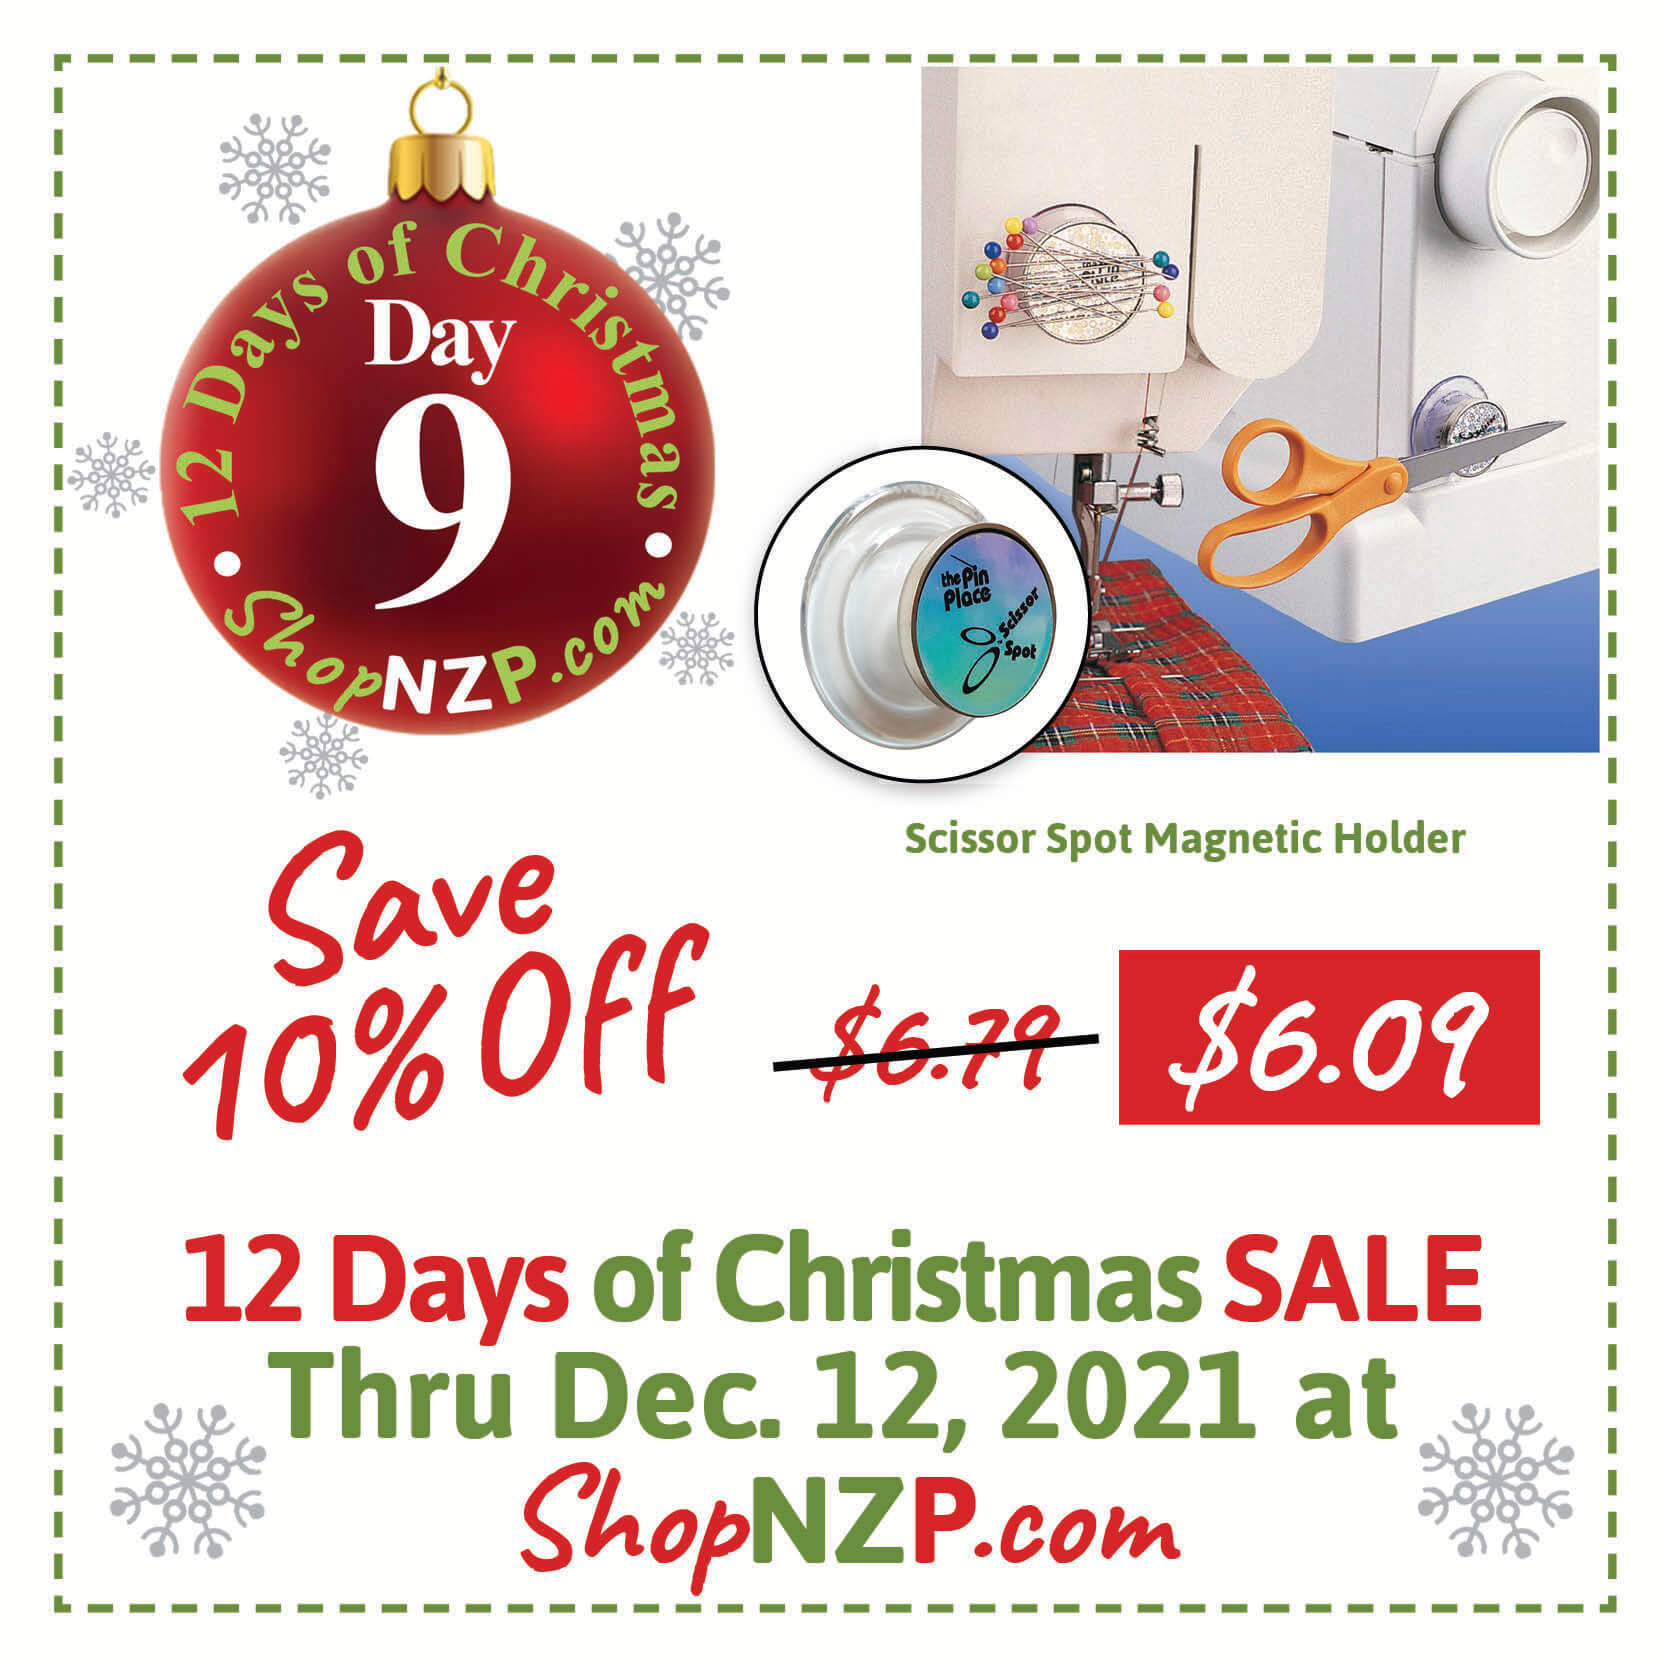 Shop our 12 Days of Christmas Sale at Nancy Zieman Productions at ShopNZP.com Sale Dec 1-12